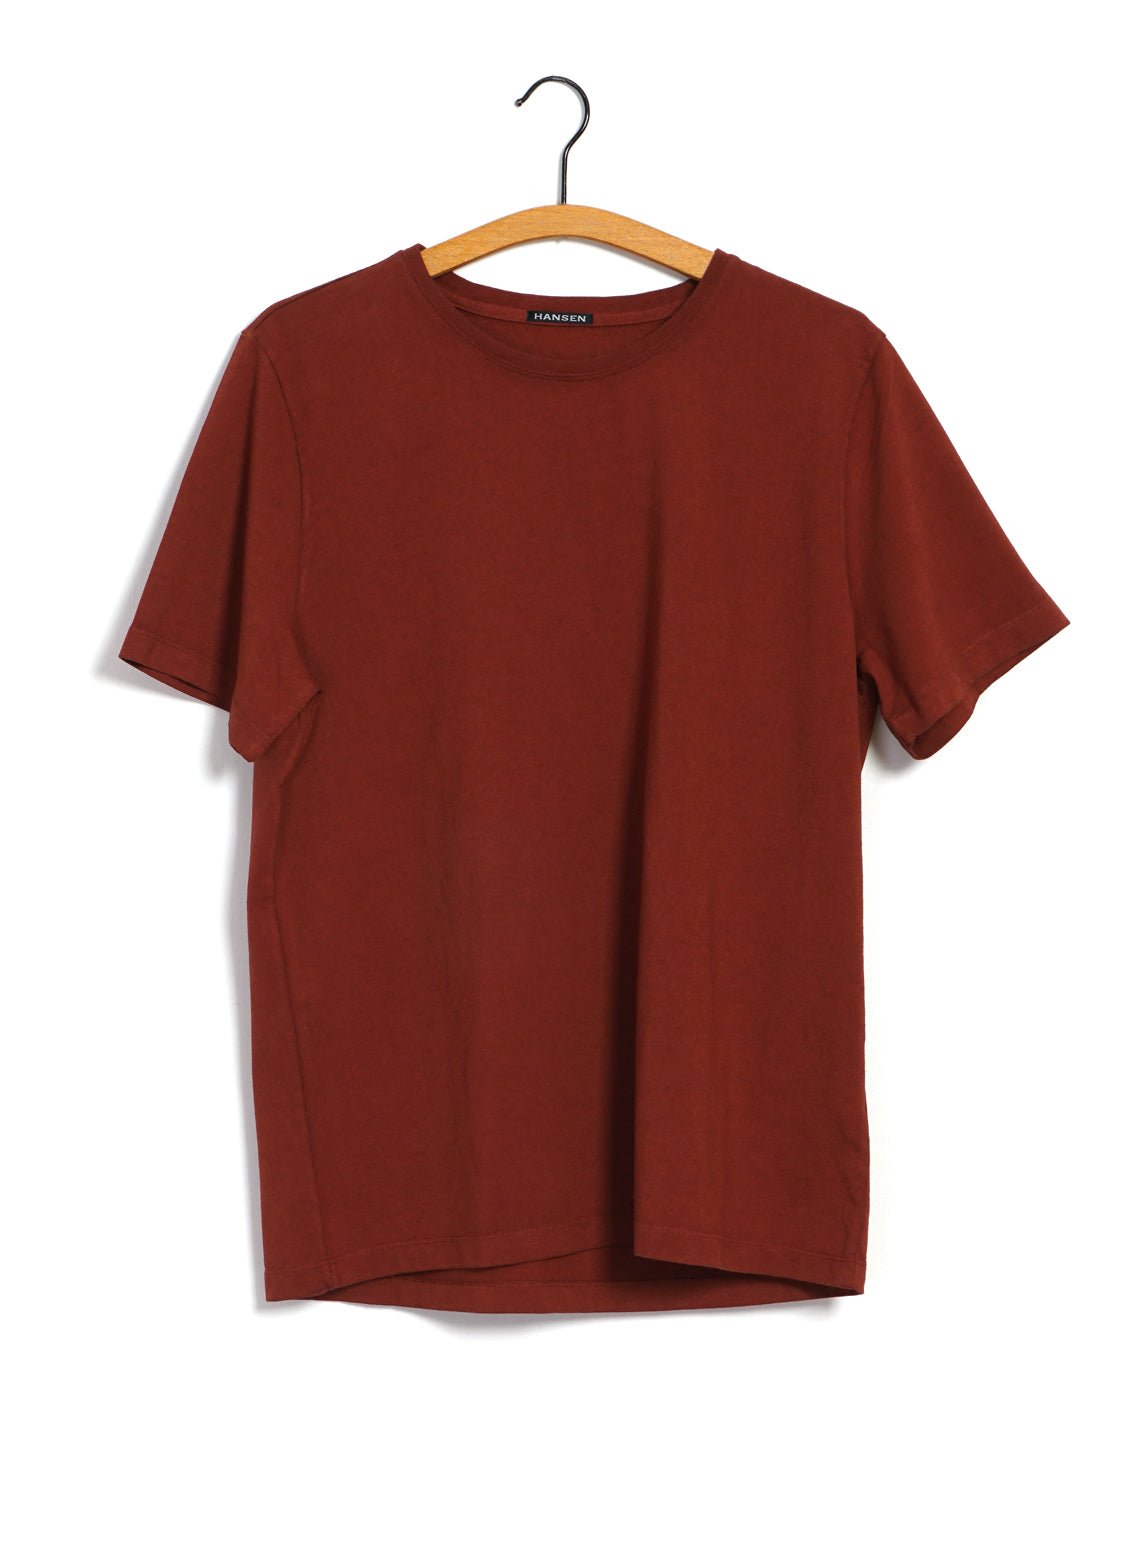 HANSEN GARMENTS - JULIAN | Crew Neck T-Shirt | Terracotta - HANSEN Garments